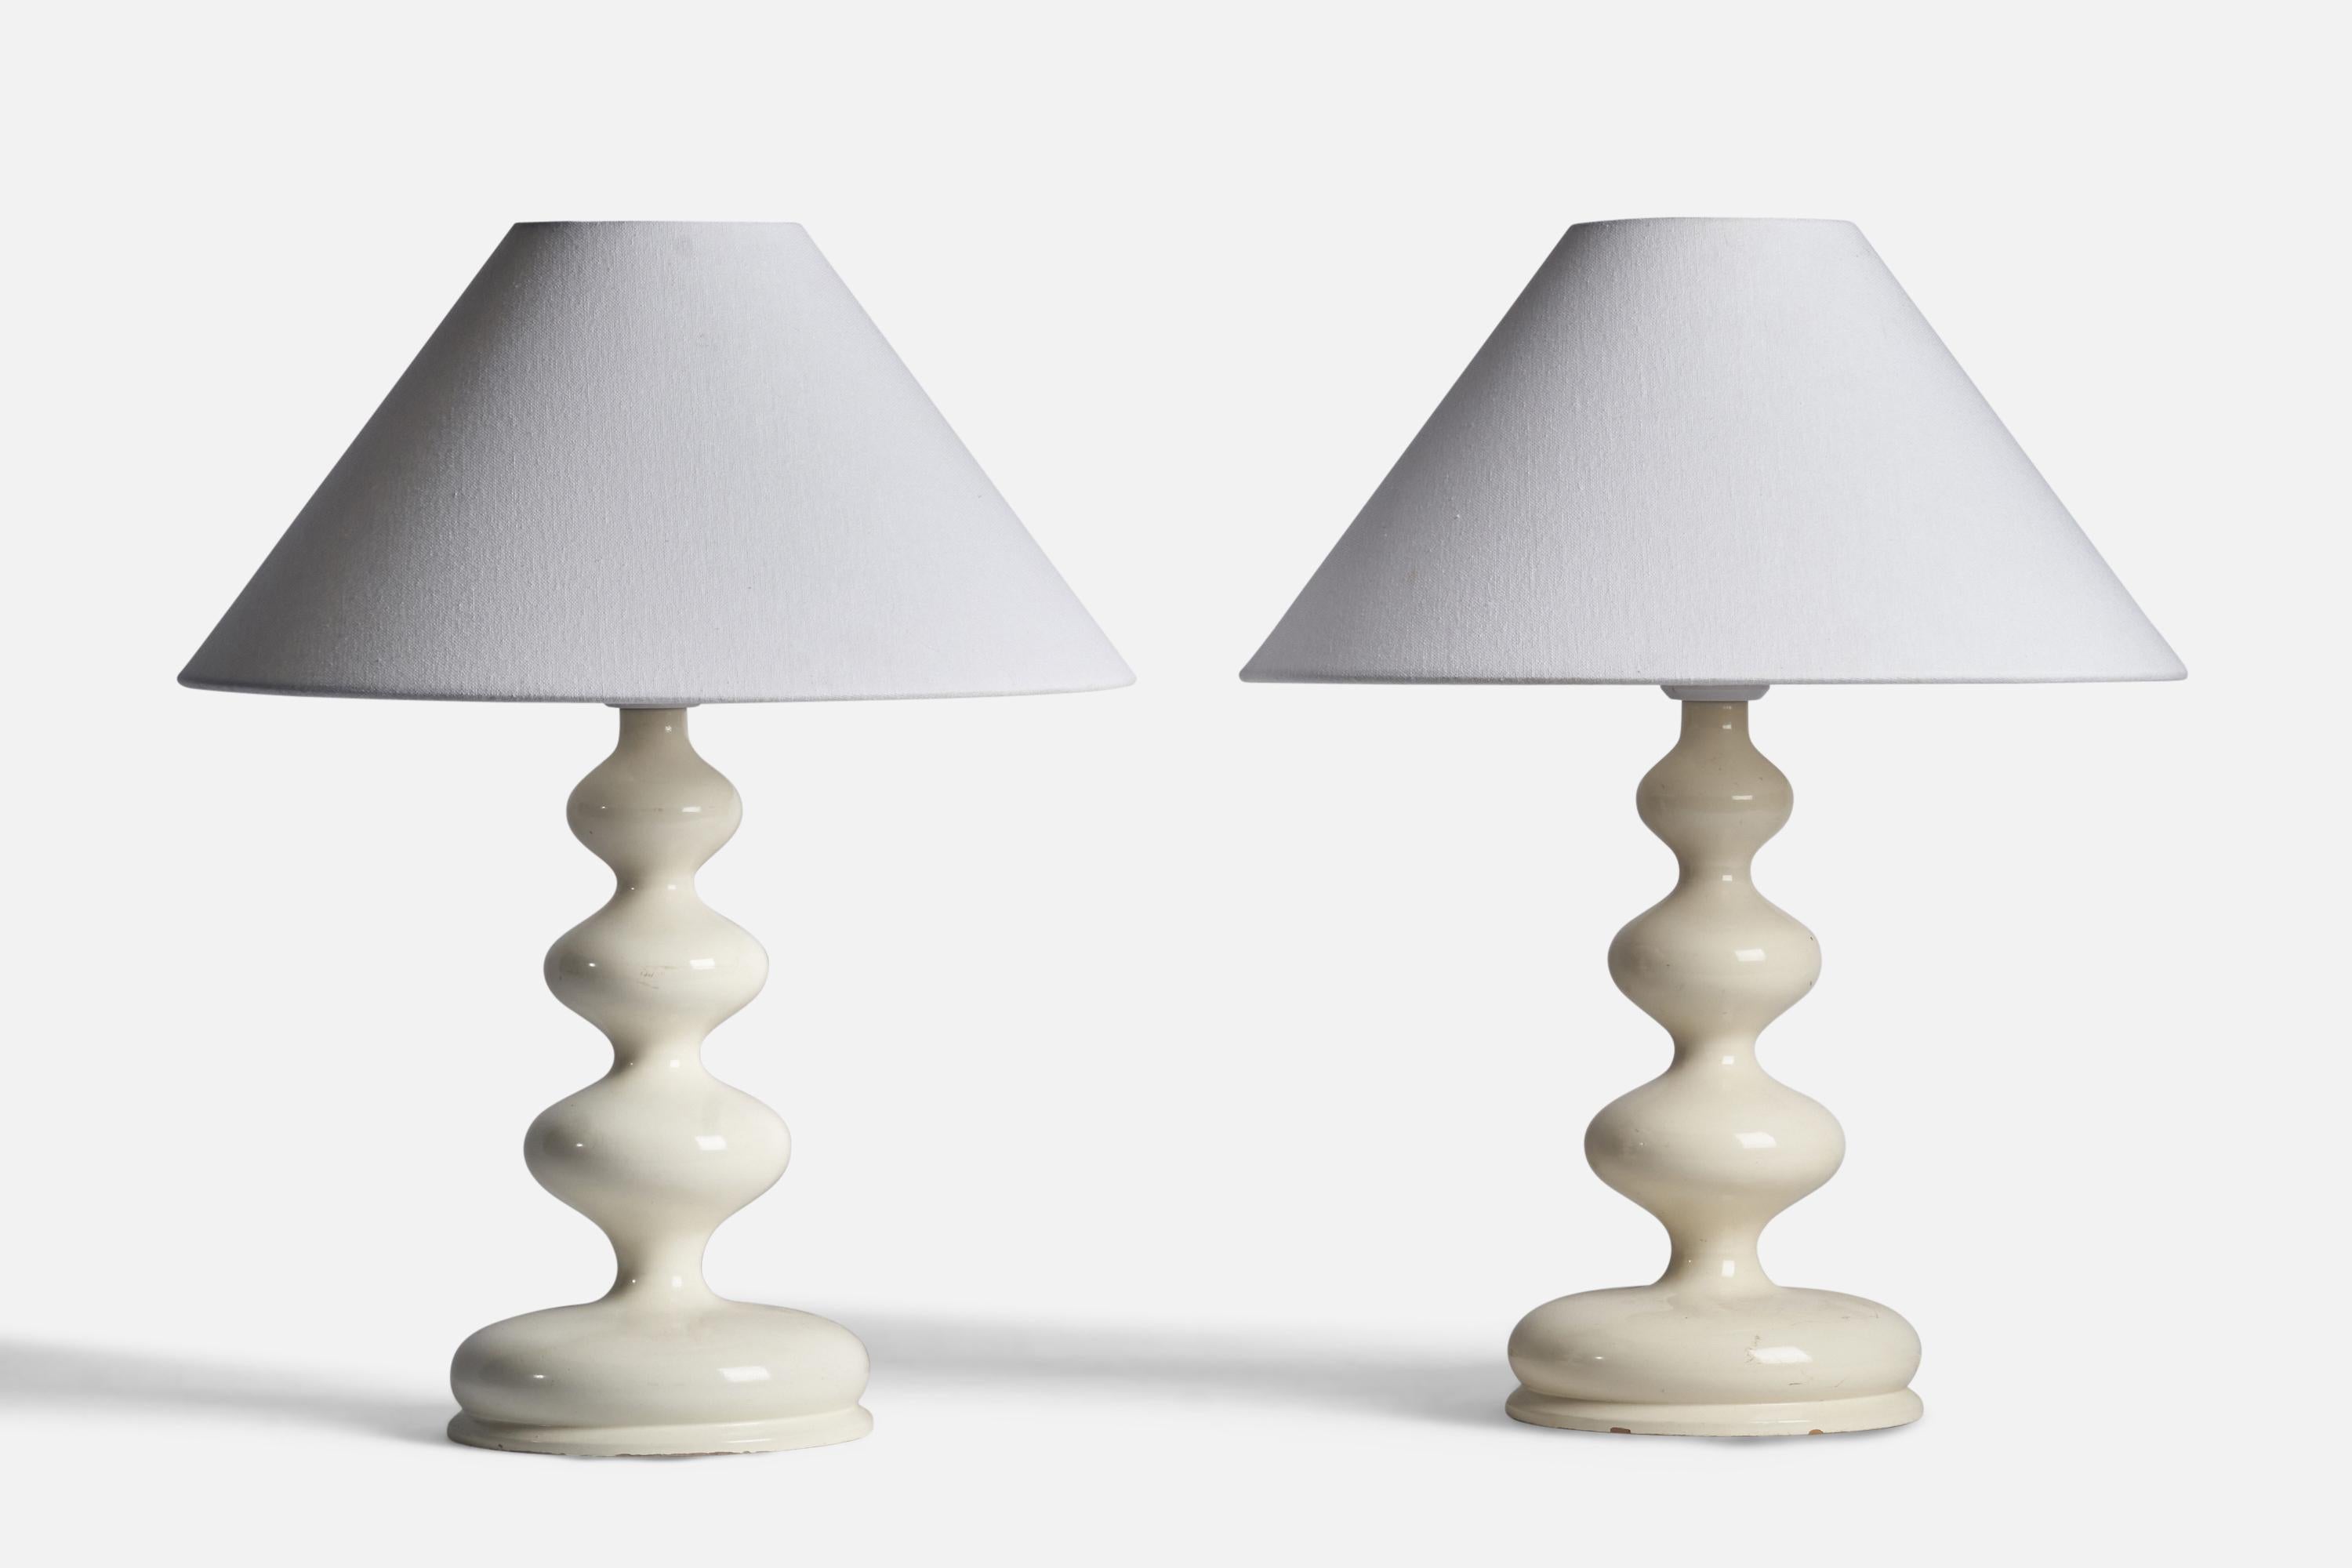 Paire de lampes de table laquées blanc crème, conçues et produites en Suède, années 1960.

Dimensions de la lampe (pouces) : 15